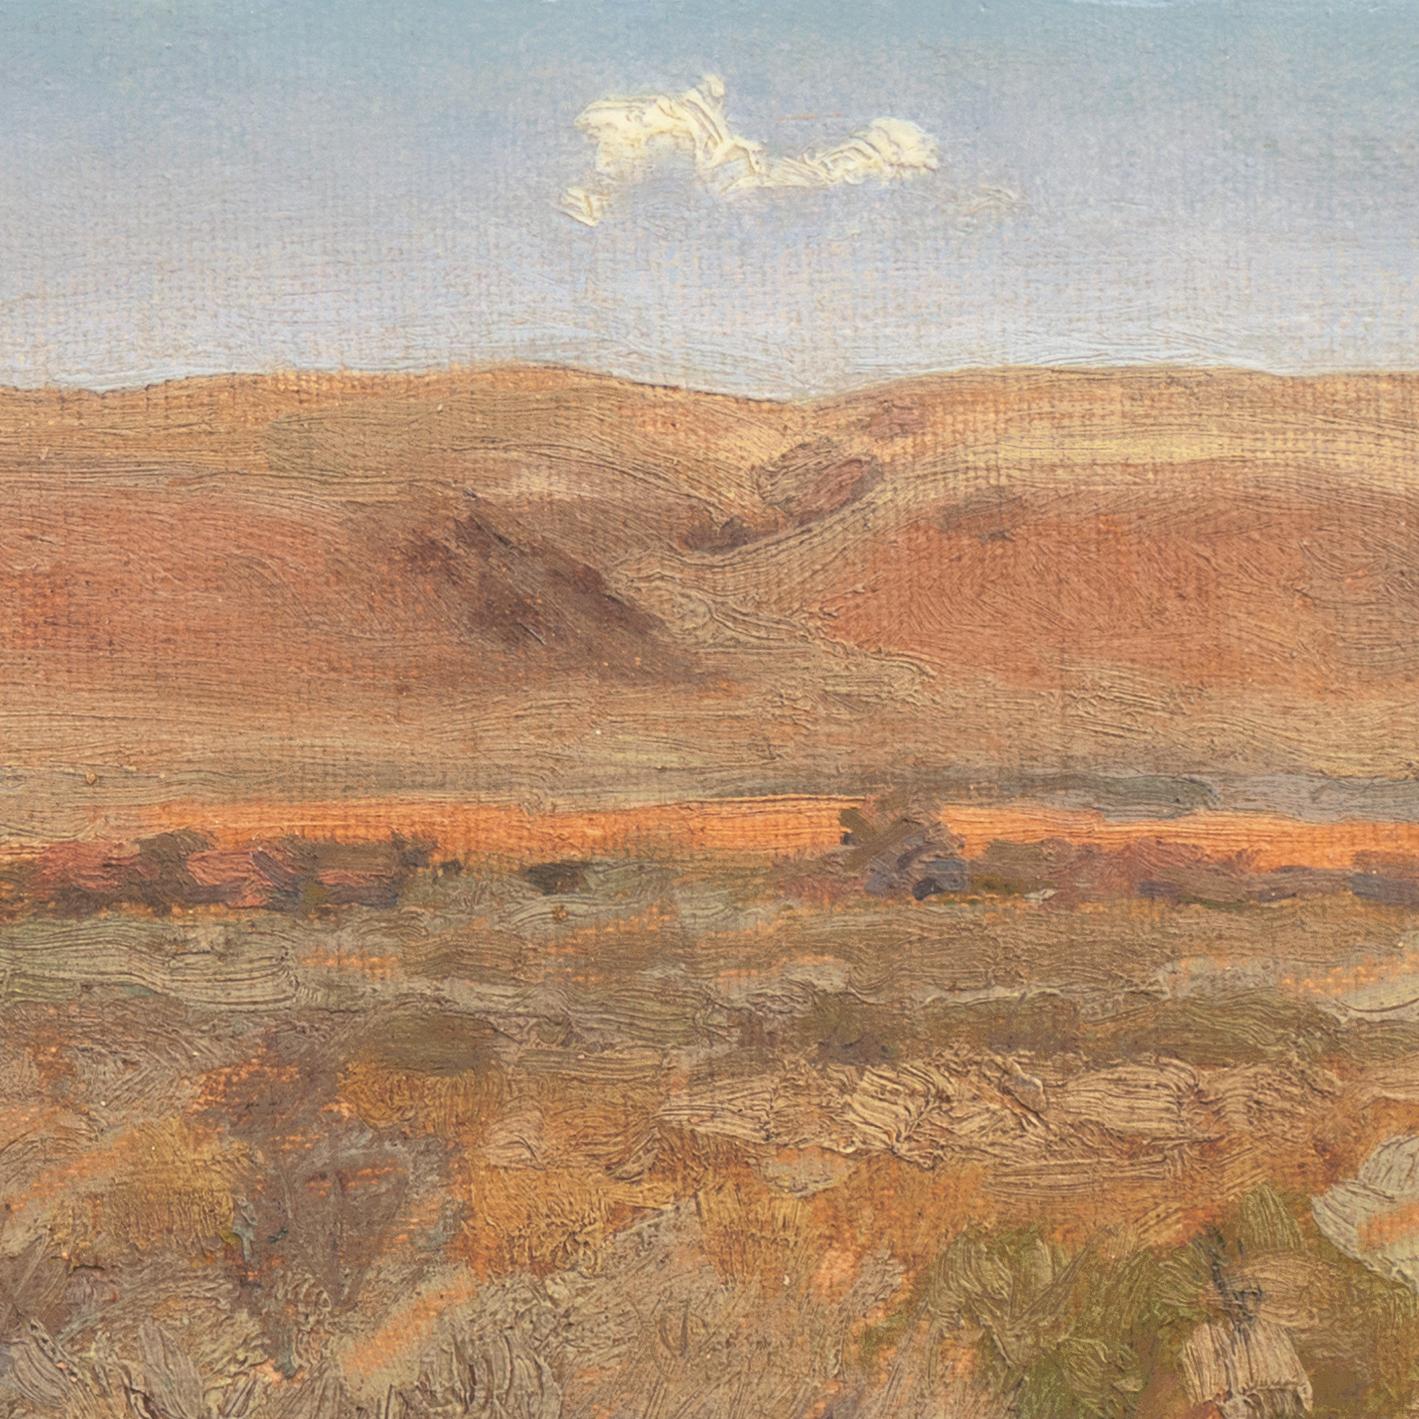 „Montana Hills“, Akademie der Künste, Berlin, National Academy of Design  (Amerikanischer Impressionismus), Painting, von Carl Rungius